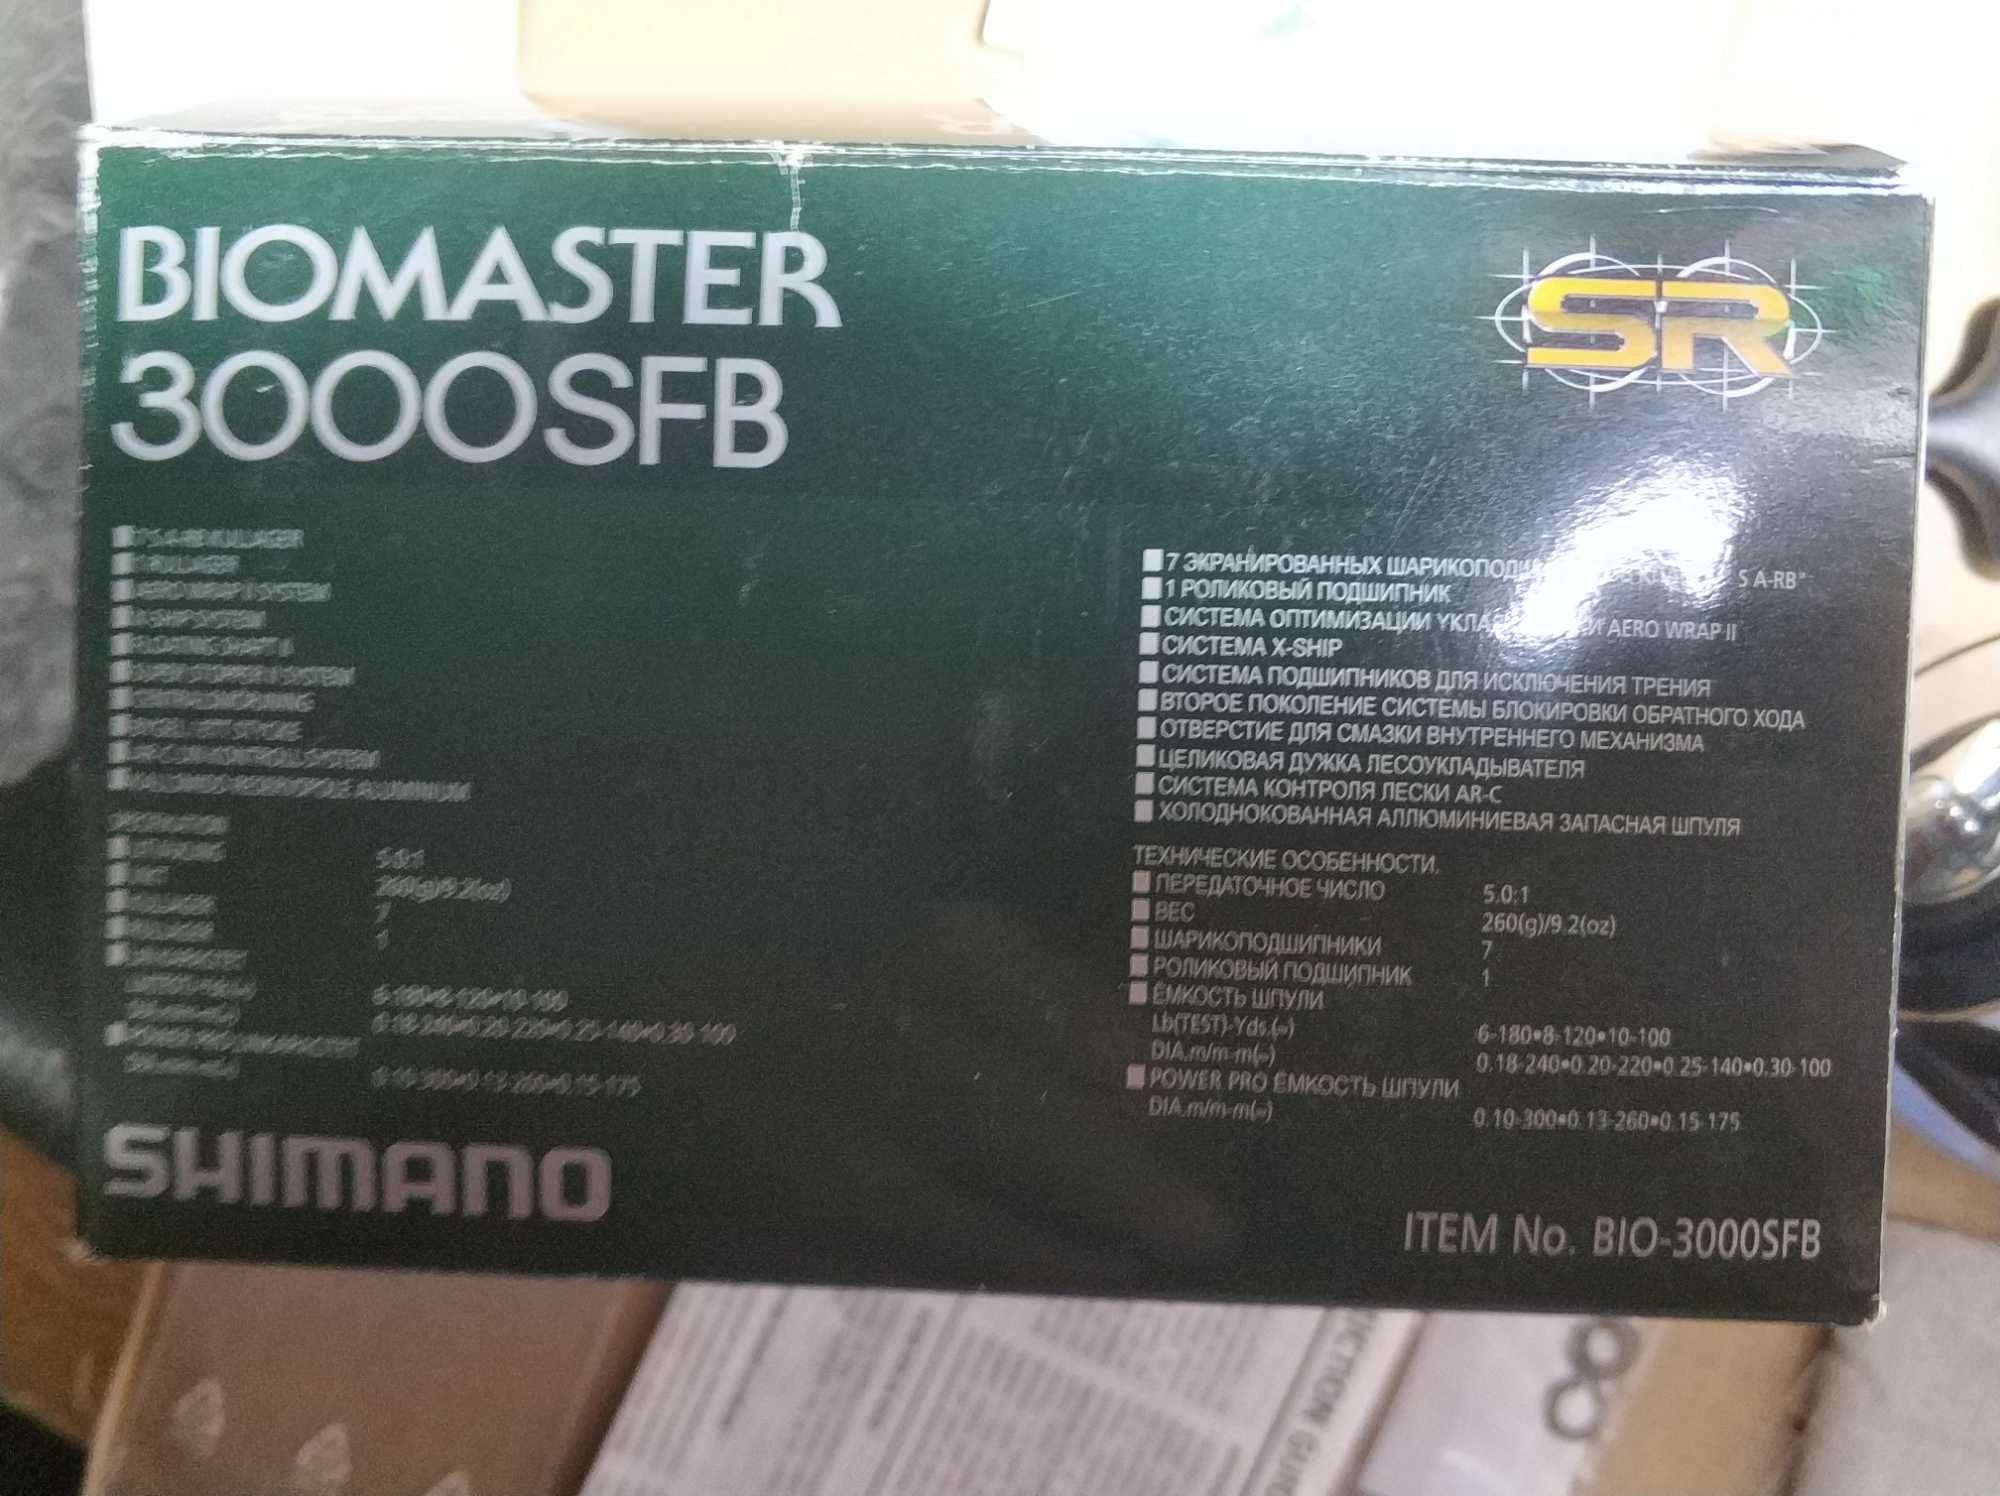 biomaster 3000sfb noua